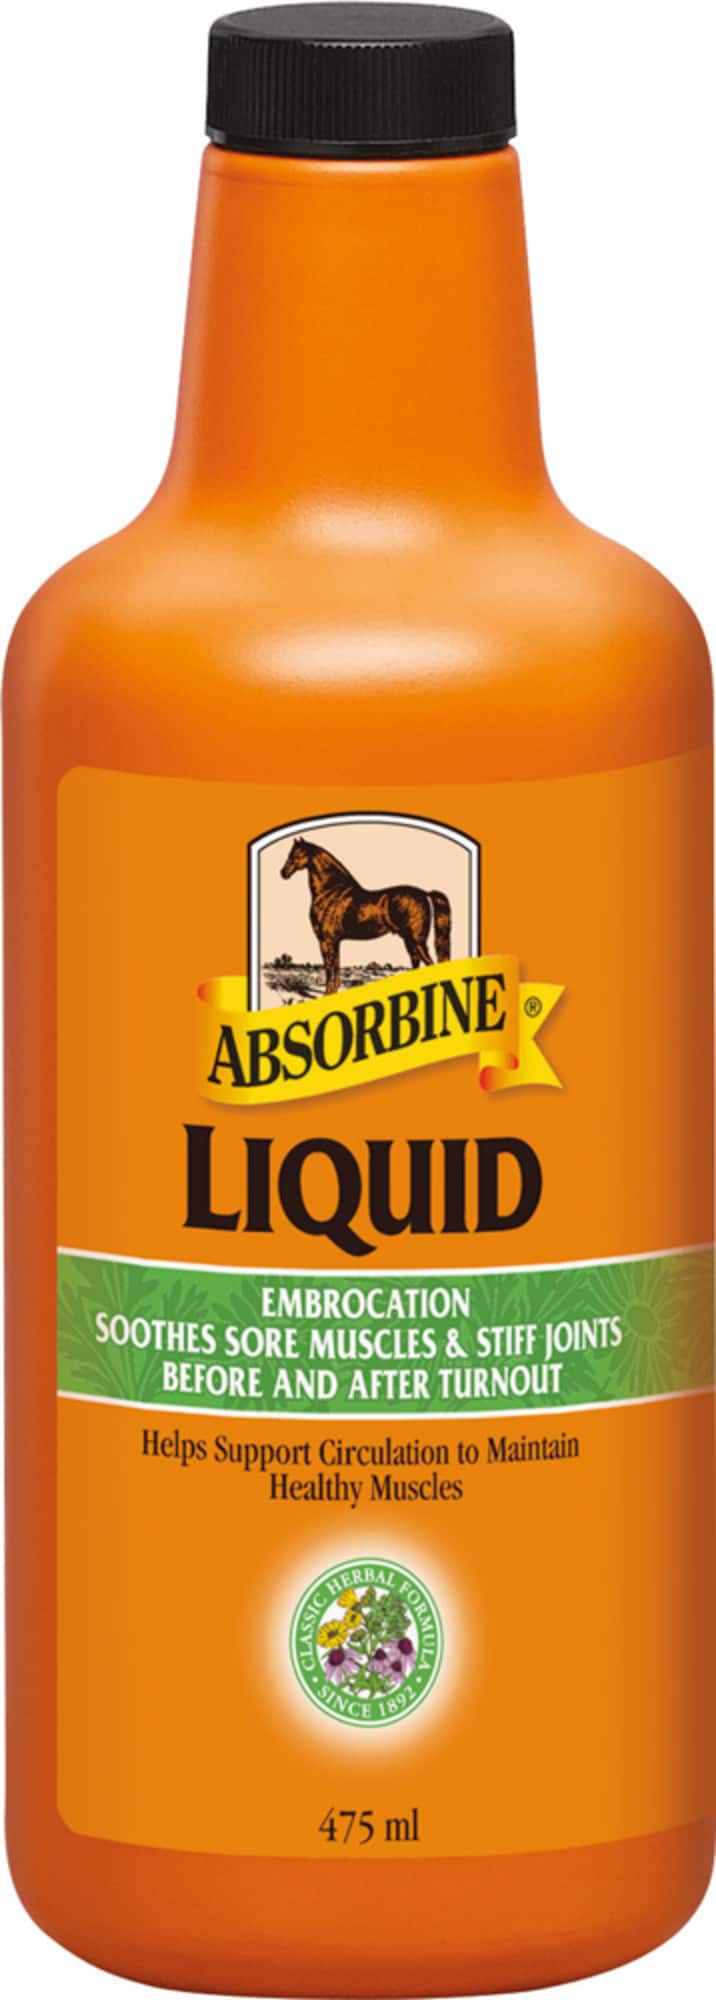 Absorbin Embrocation Liquid VetLin, 475ml